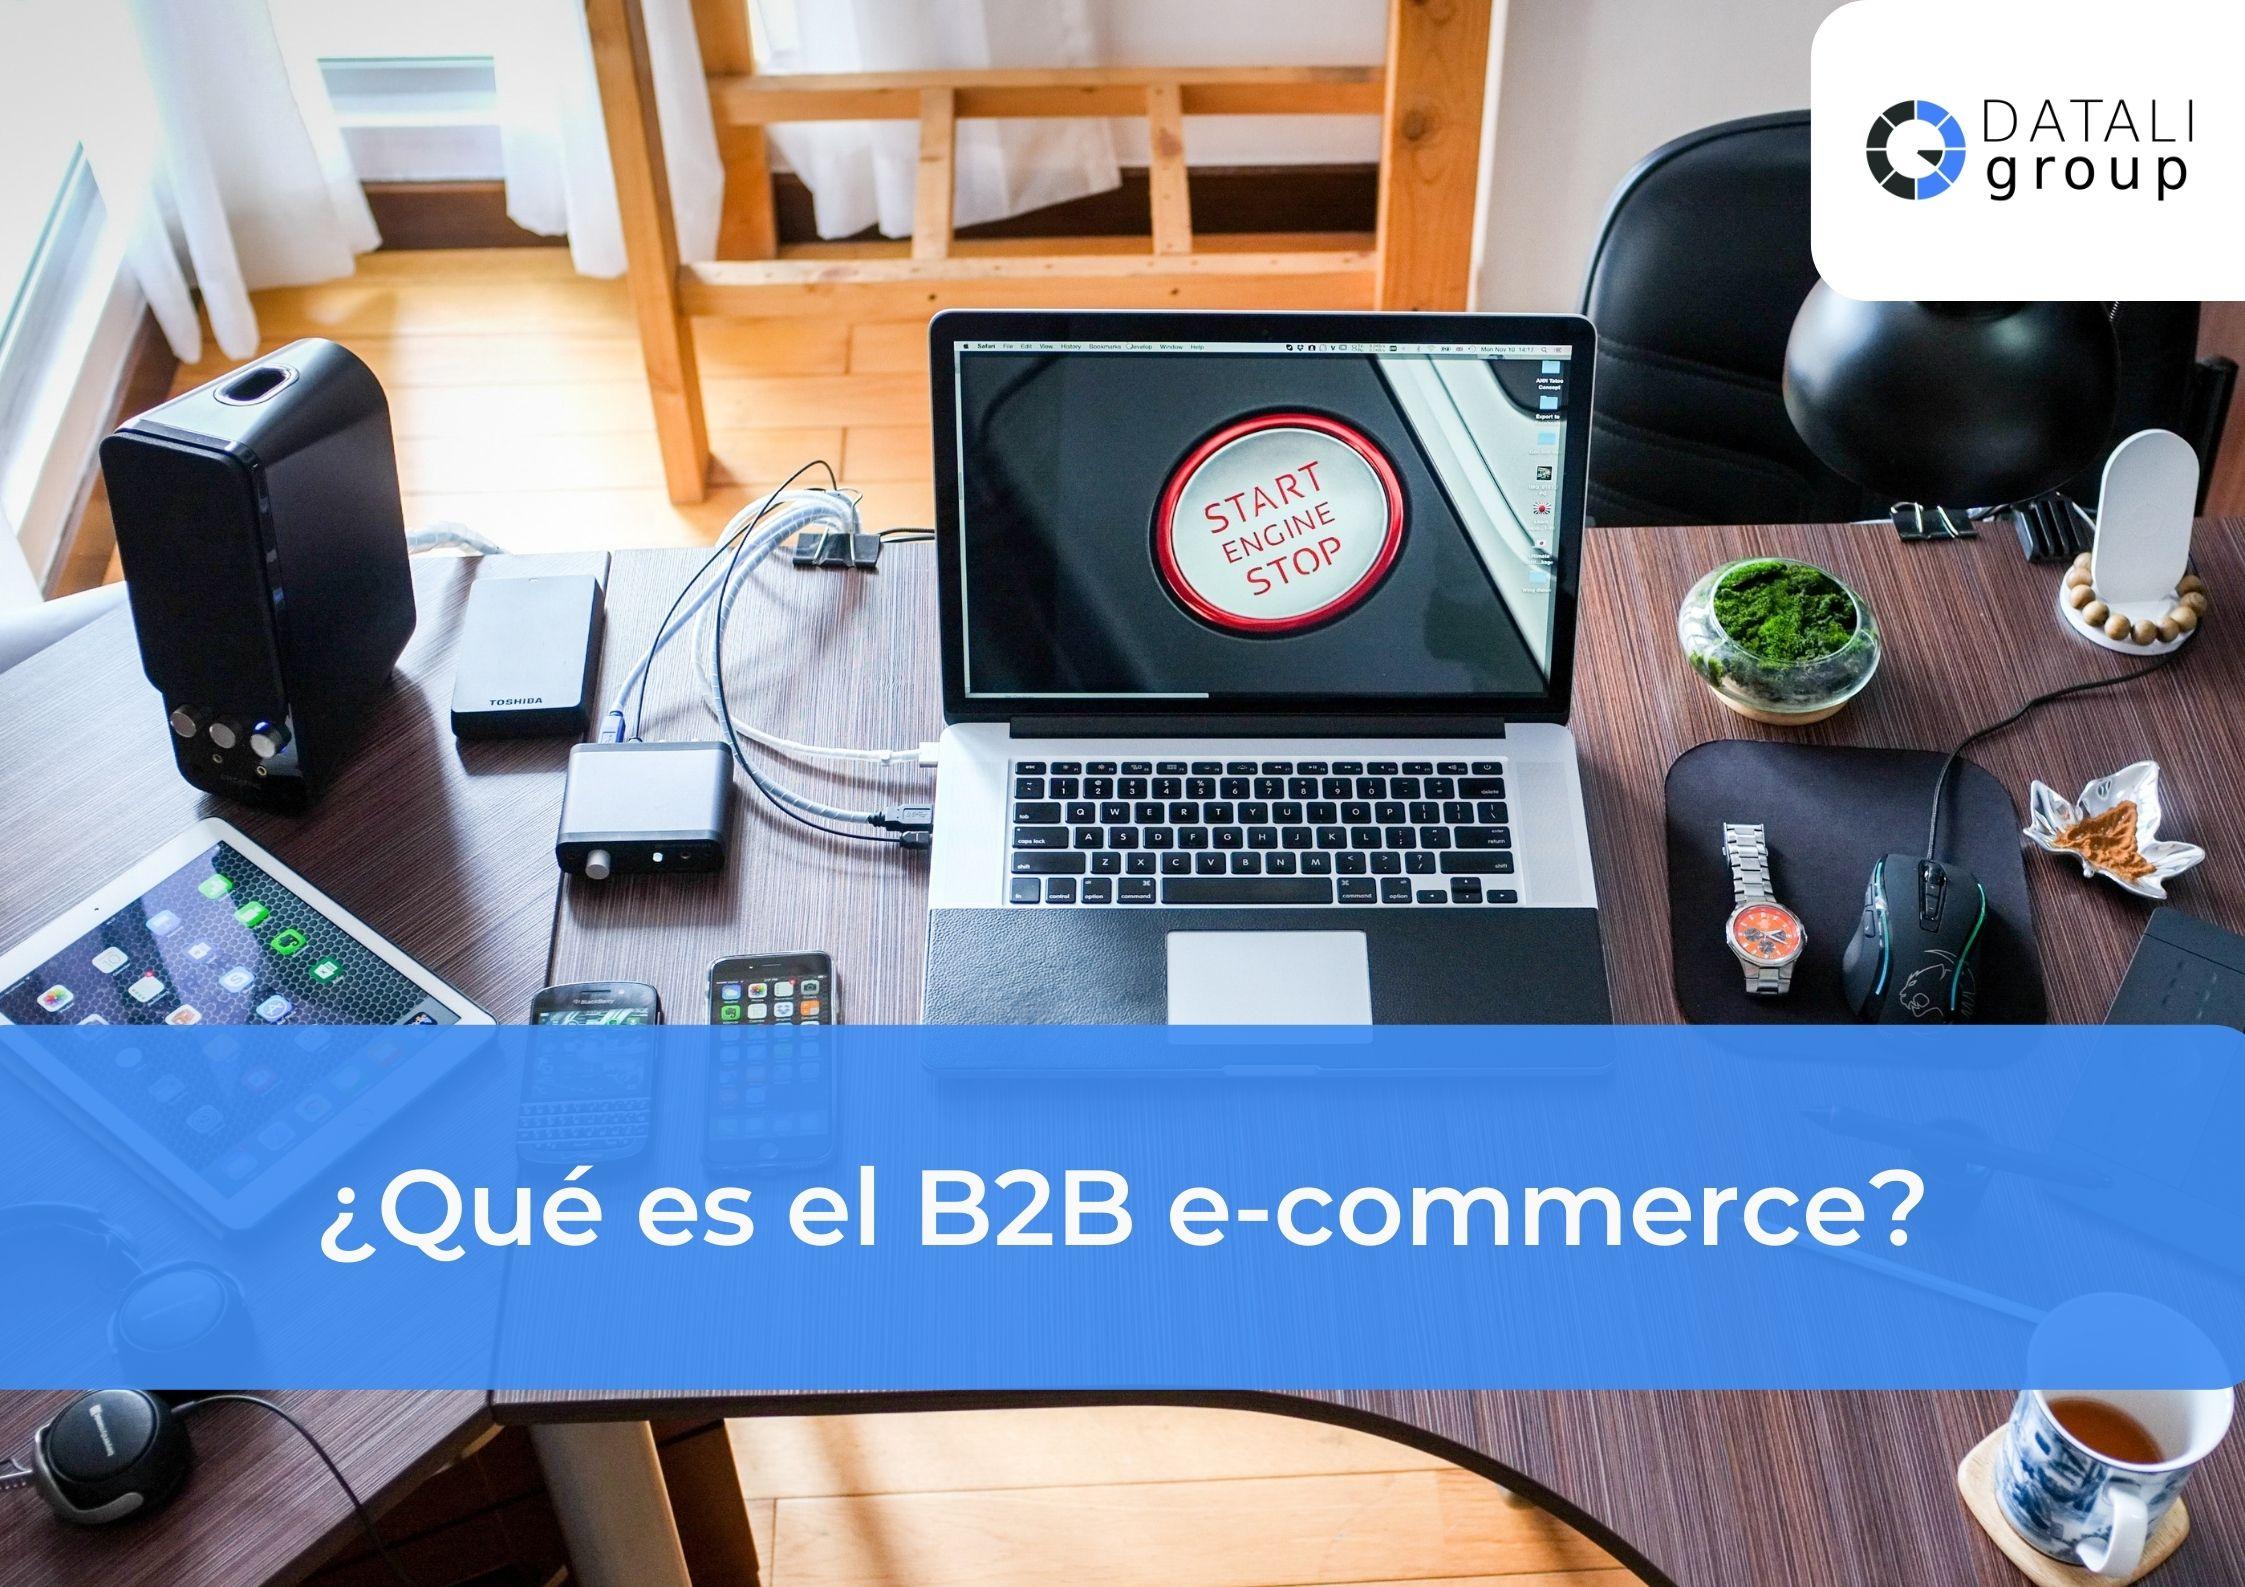 ¿Qué es el B2B e-commerce? - Datali Group